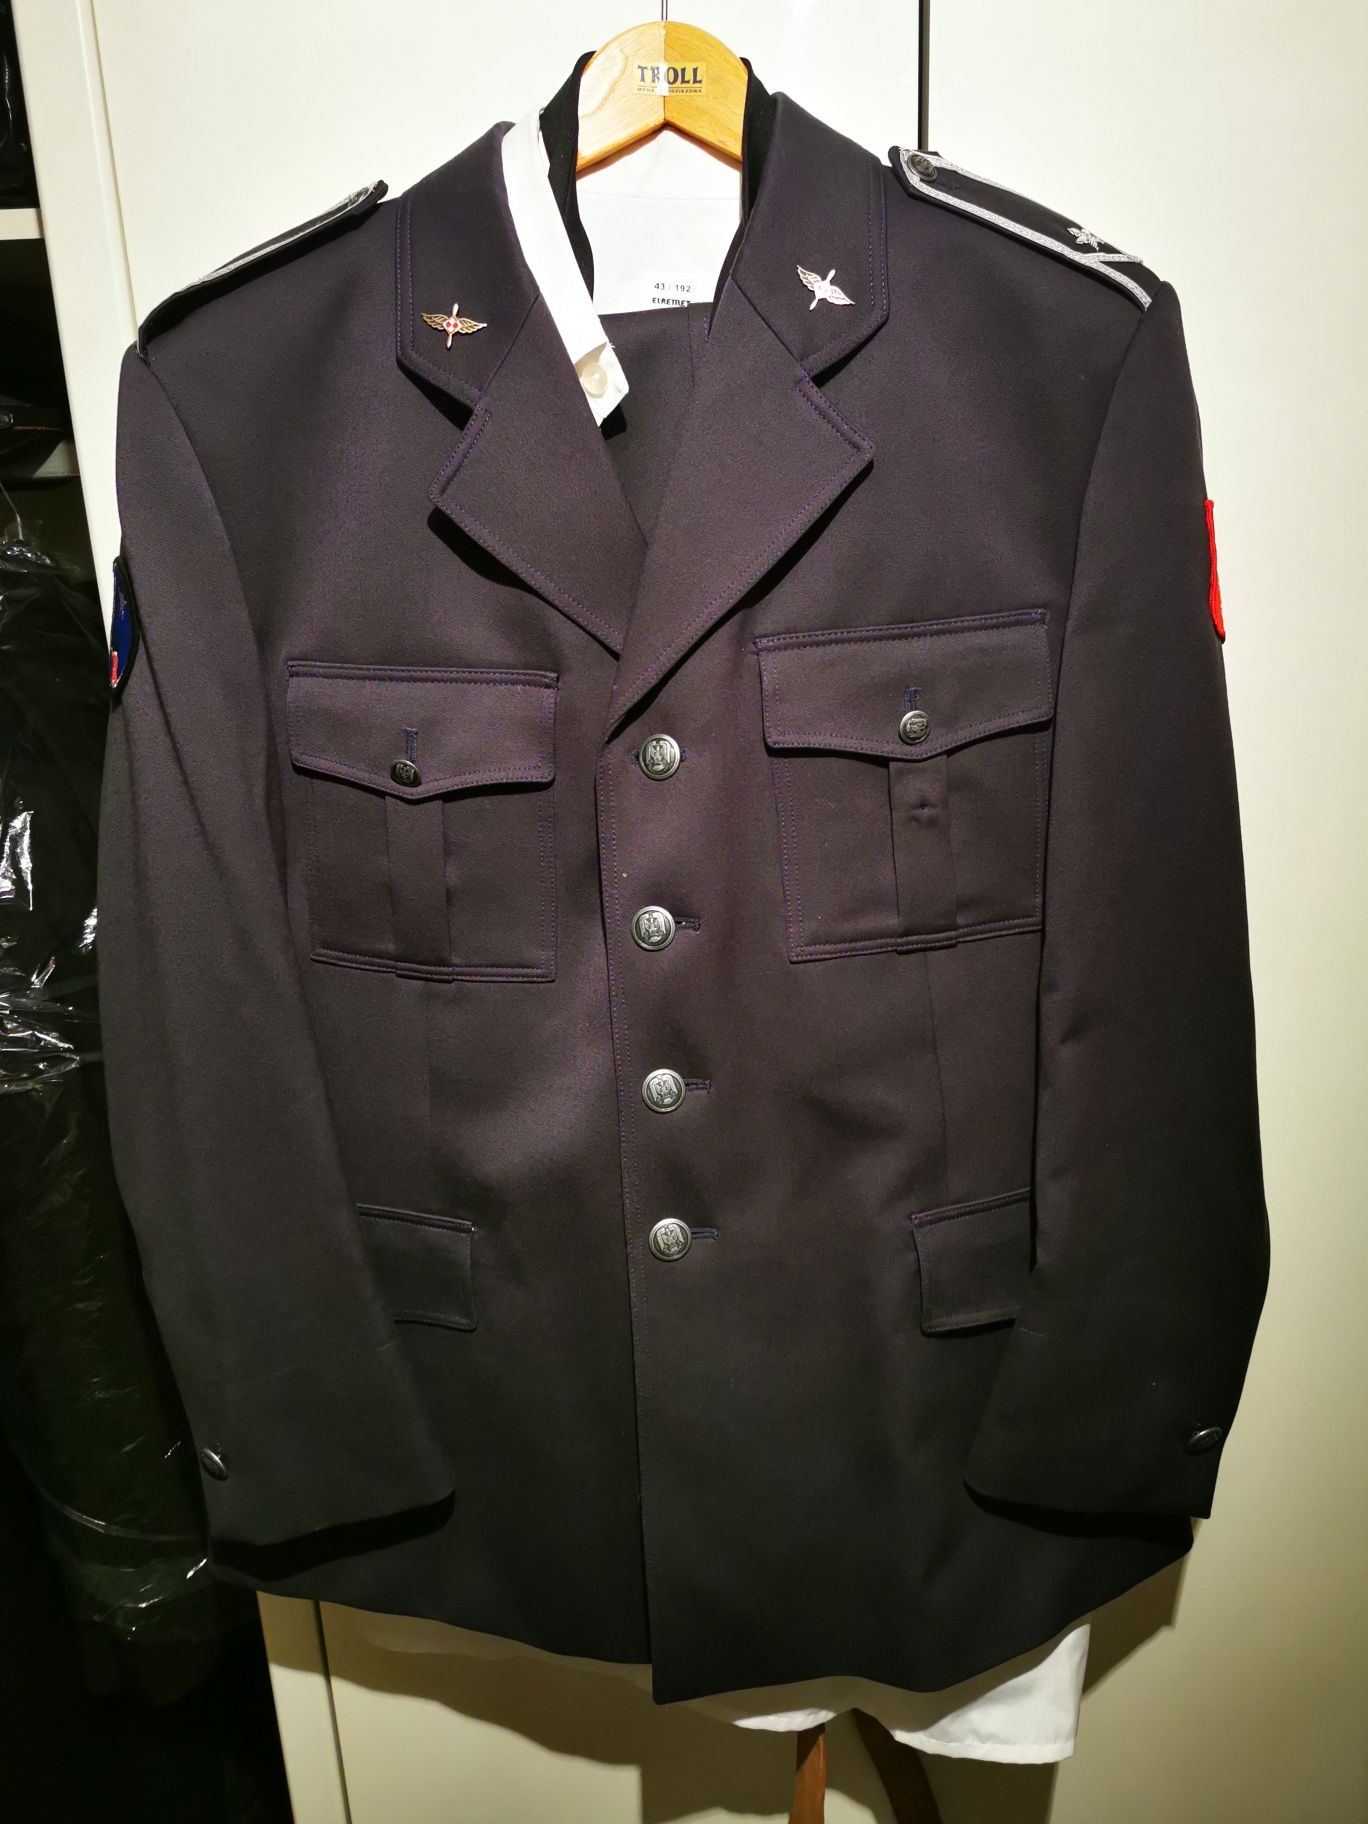 Płaszcz, mundur galowy Sił Powietrznych plus dodatki